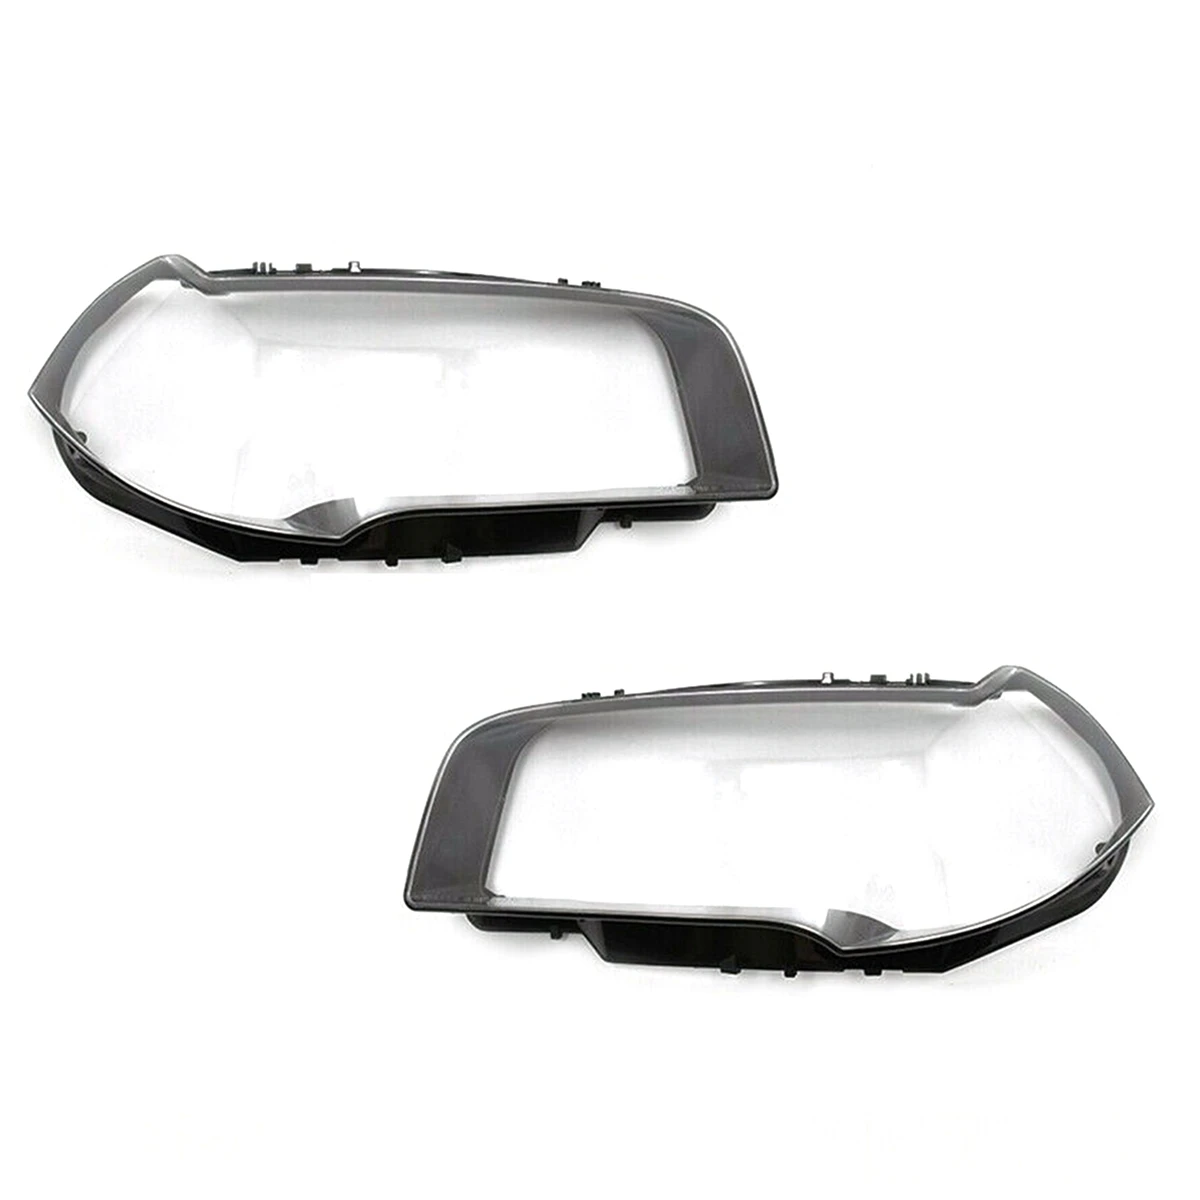 פנסי המכונית כיסוי מעטפת שקופה עדשה Lampshdade פנס עדשה אהיל המנורה עבור - X3 E83 2003-2011 - 1